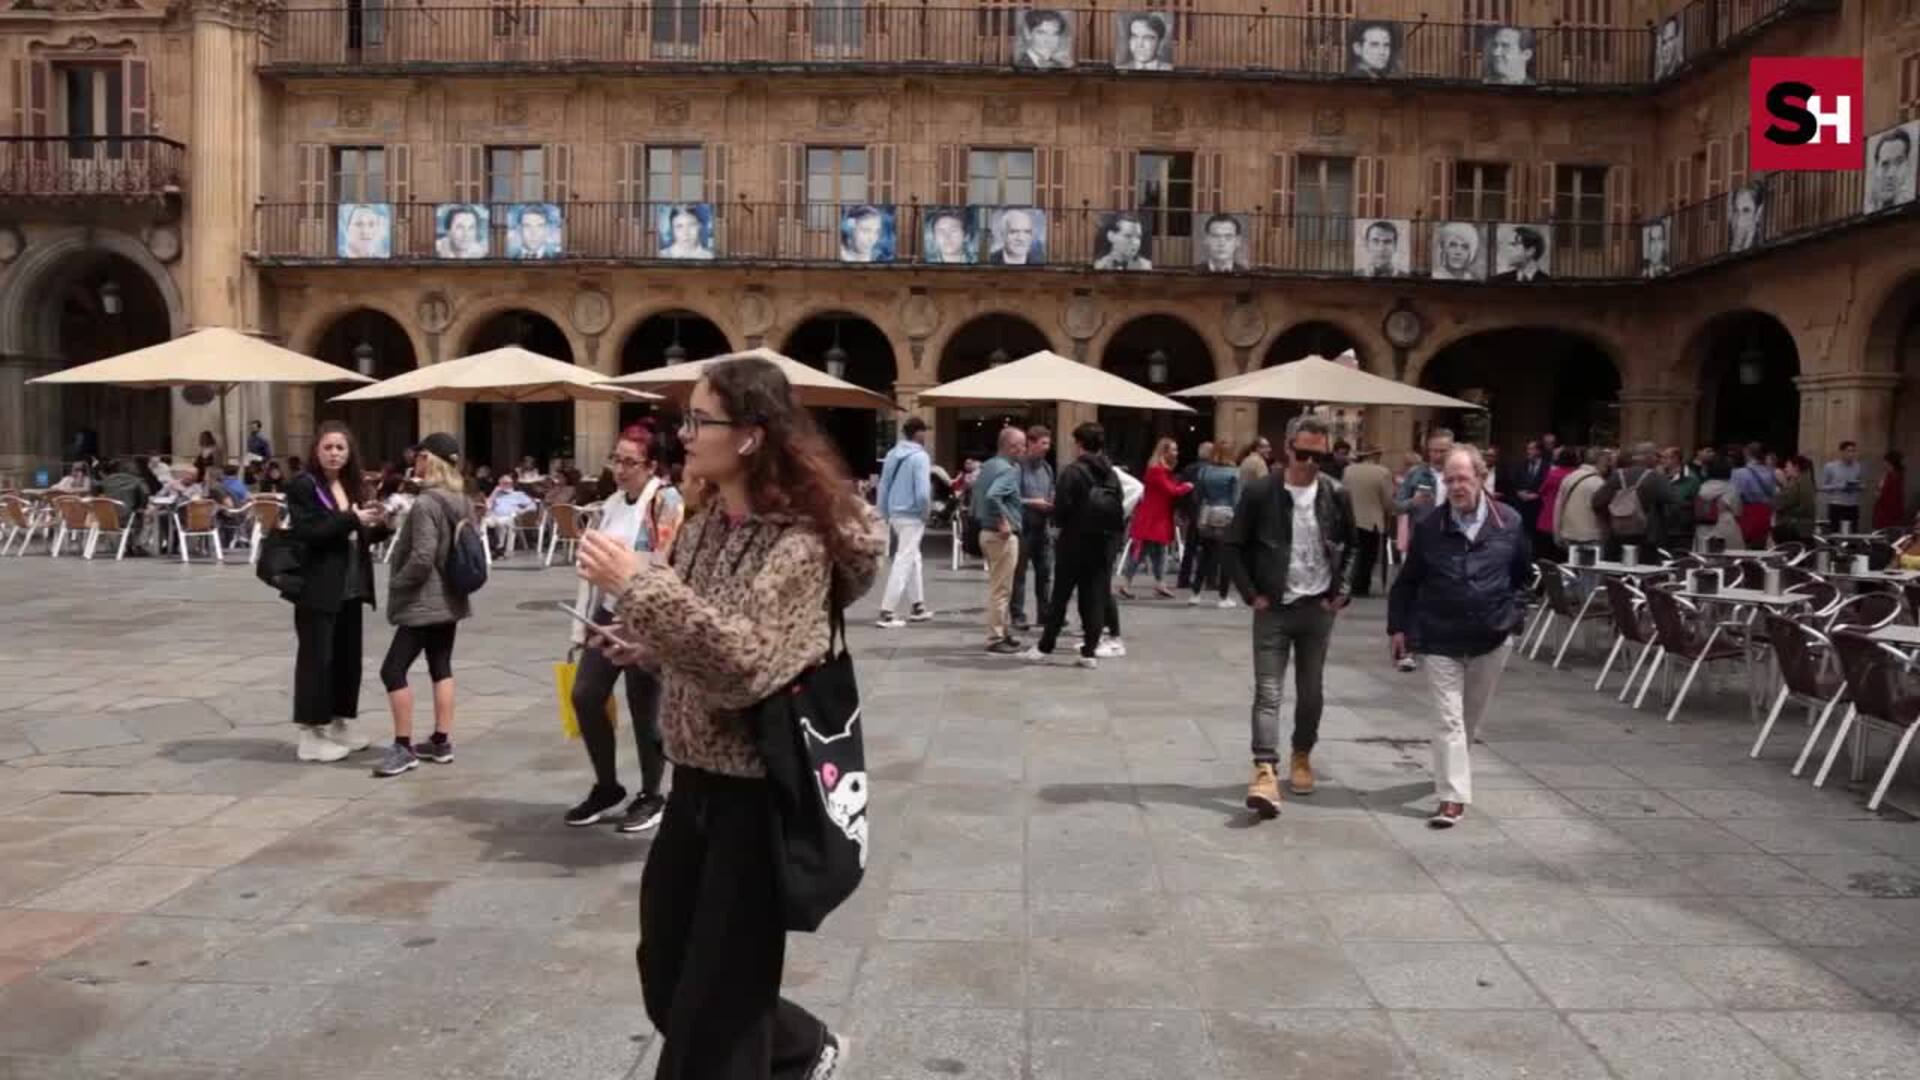 Exposición por el 125 aniversario de Lorca en la Plaza Mayor de Salamanca